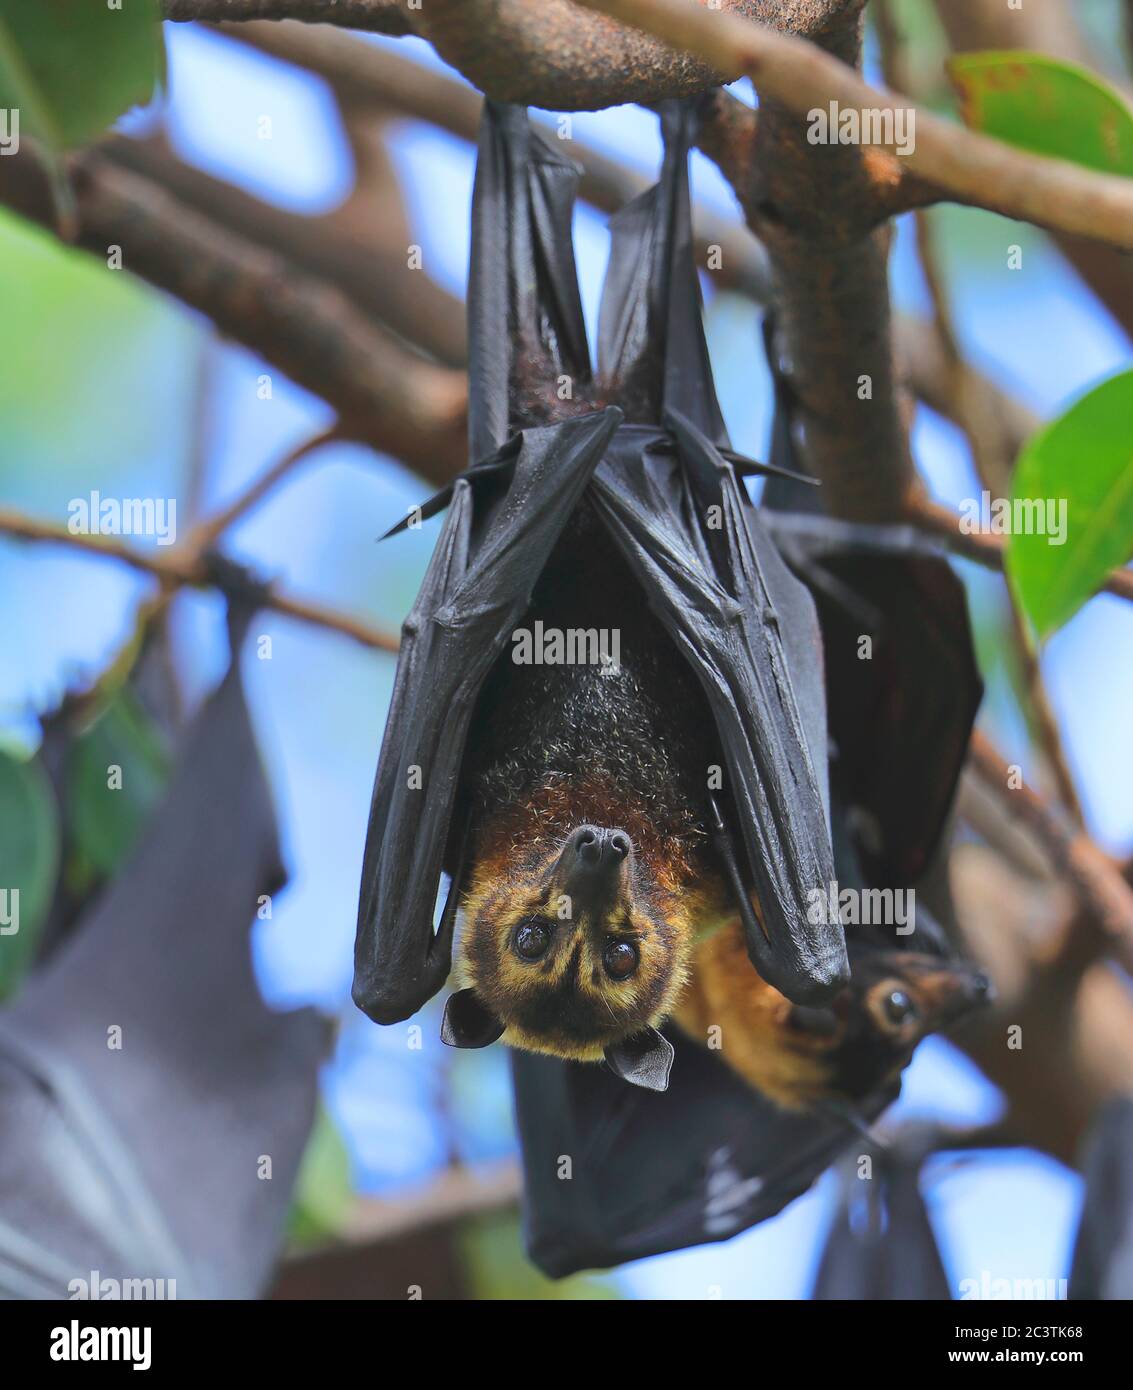 Renard volant de façon spectaculaire, chauve-souris de fruits de façon spectaculaire (Pteropus osbrillatus), accrochée à une branche, vue de face, Australie, Queensland Banque D'Images